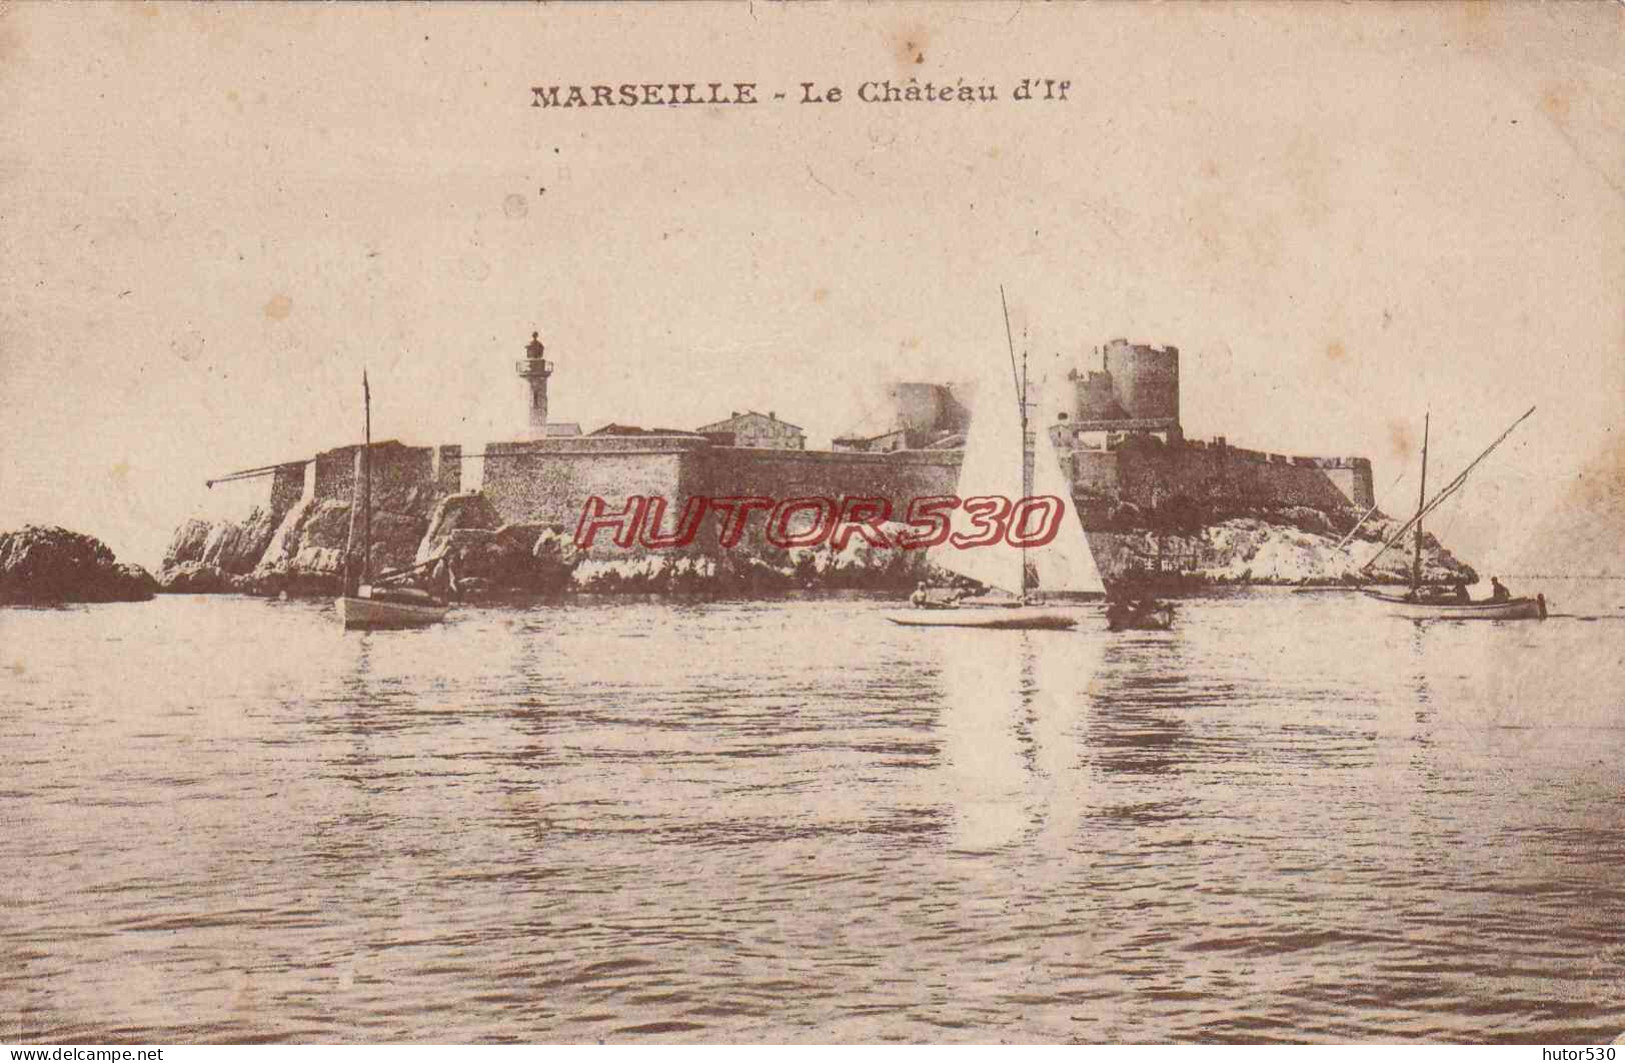 CPA MARSEILLE - LE CHATEAU D'IF - Castillo De If, Archipiélago De Frioul, Islas...